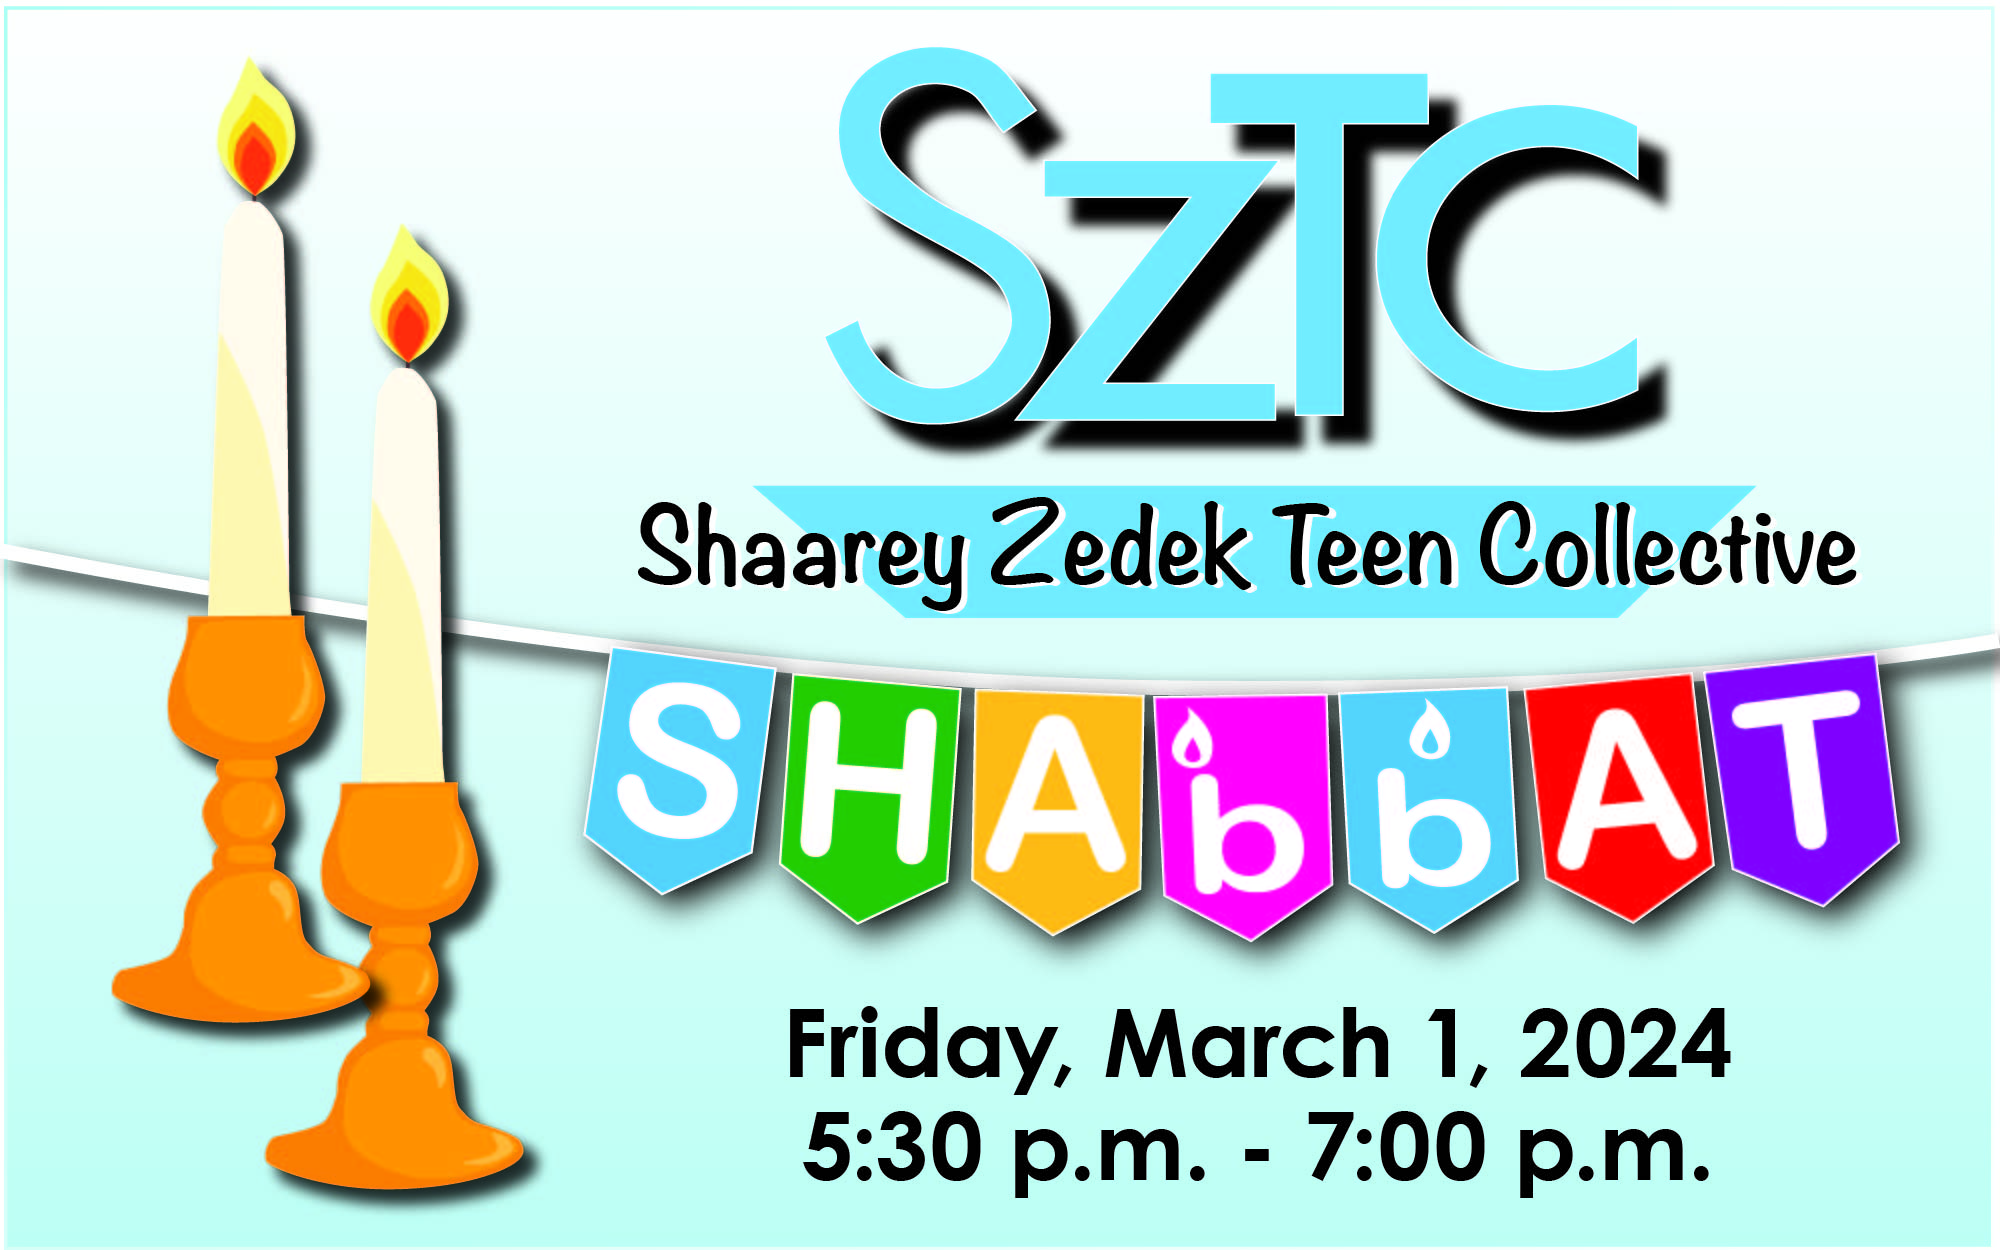 Teen SZTC Shabbat